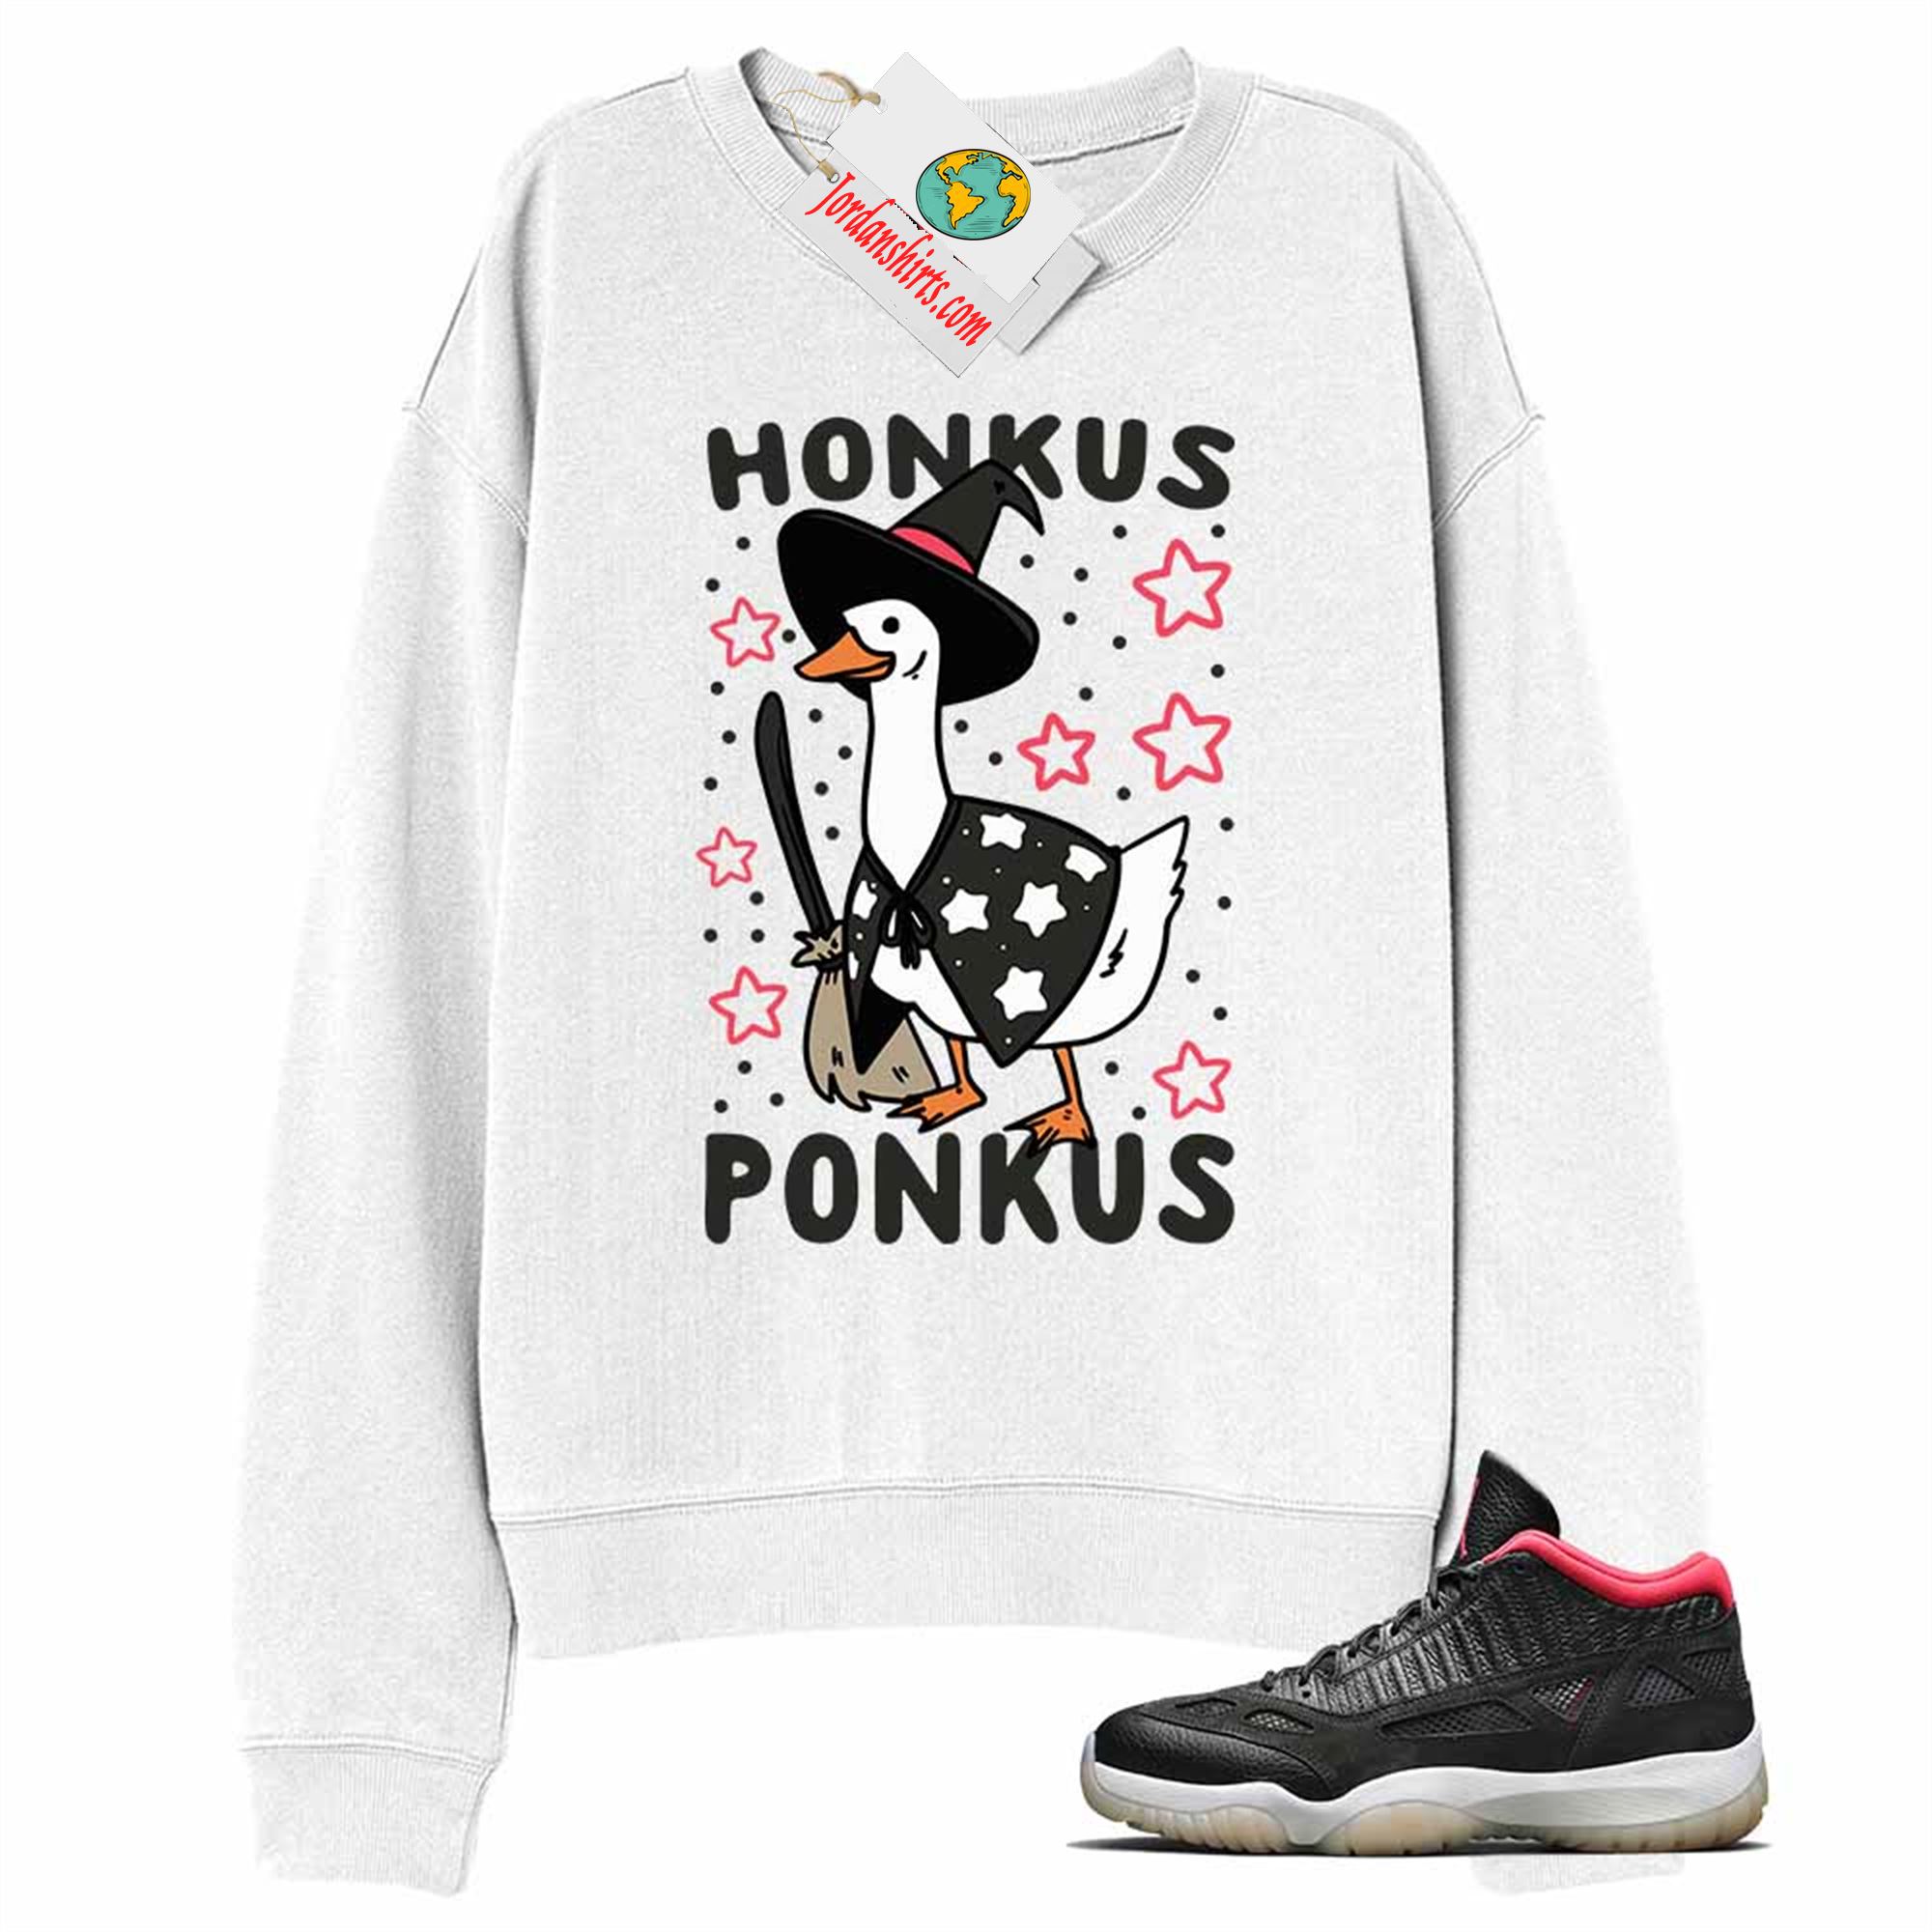 Jordan 11 Sweatshirt, Witches Duck Honkus Ponkus White Sweatshirt Air Jordan 11 Bred 11s Size Up To 5xl